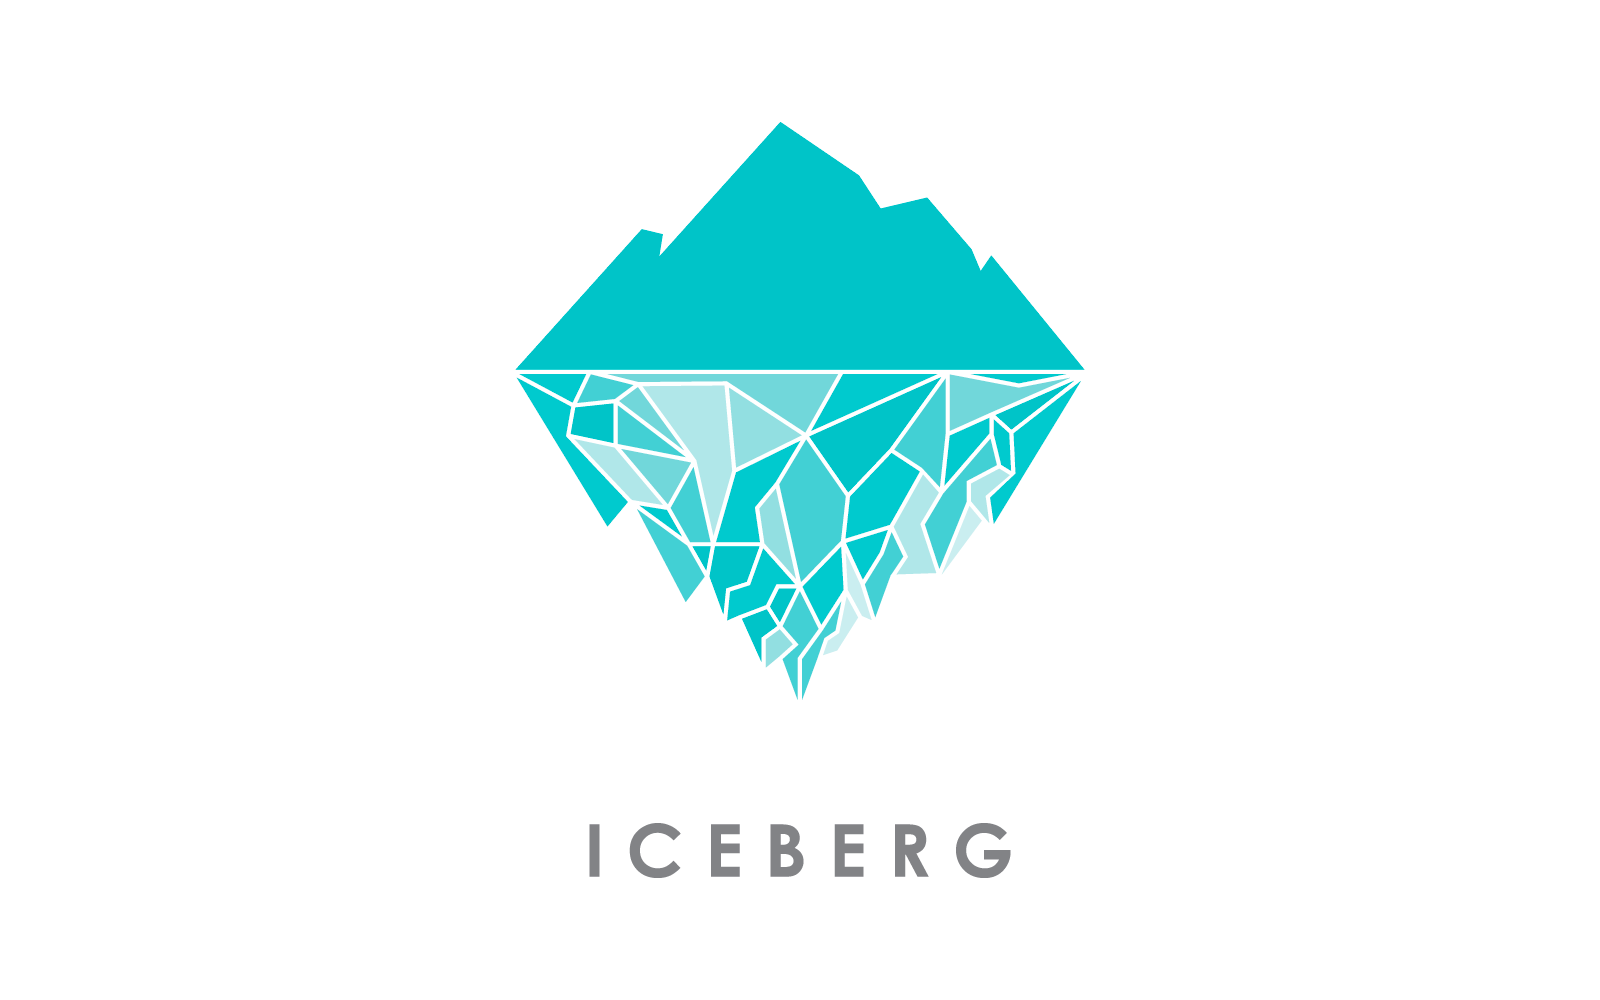 Iceberg illustration logo vector design Logo Template